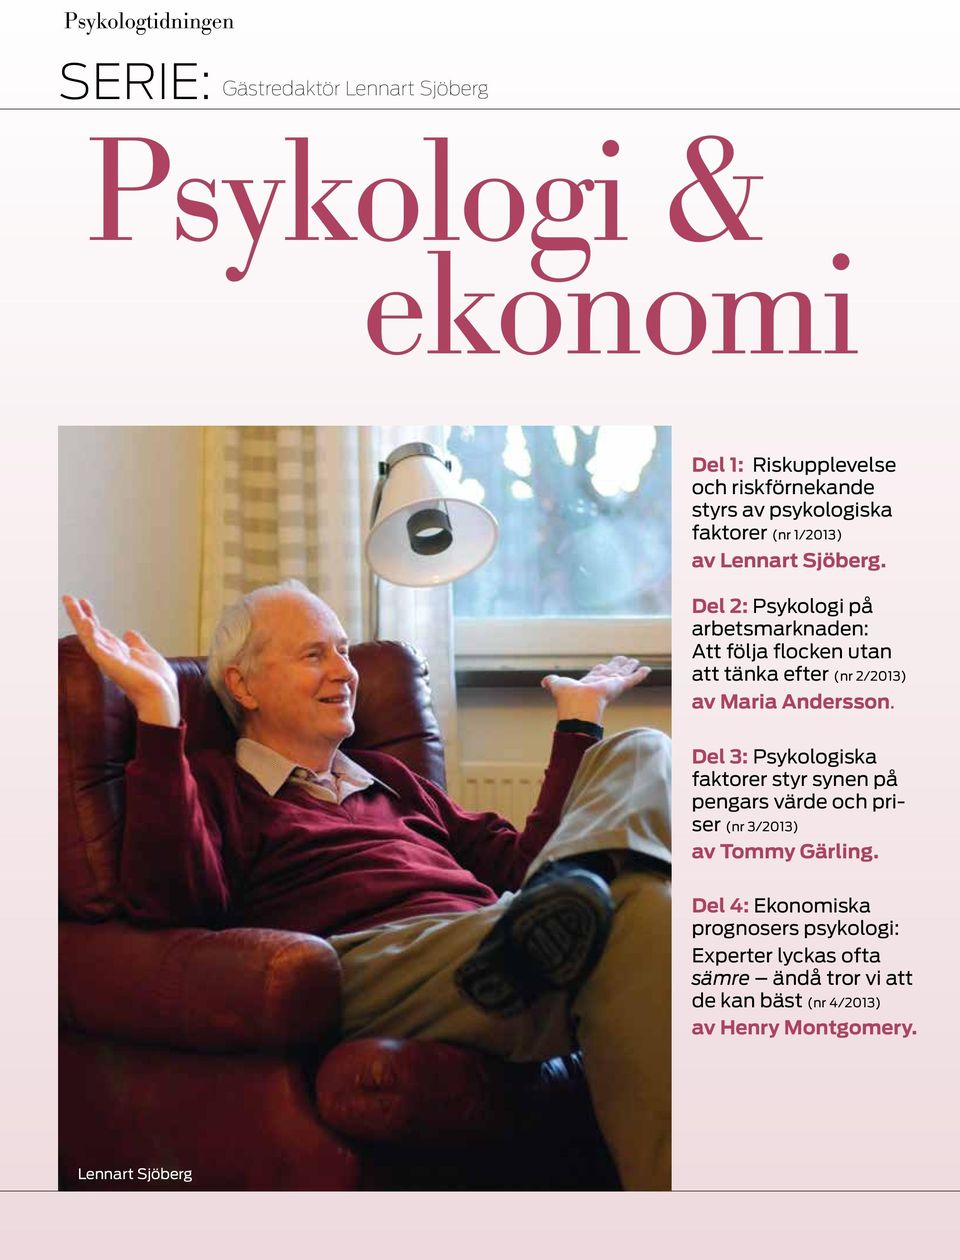 Del 2: Psykologi på arbetsmarknaden: Att följa flocken utan att tänka efter (nr 2/2013) av Maria Andersson.